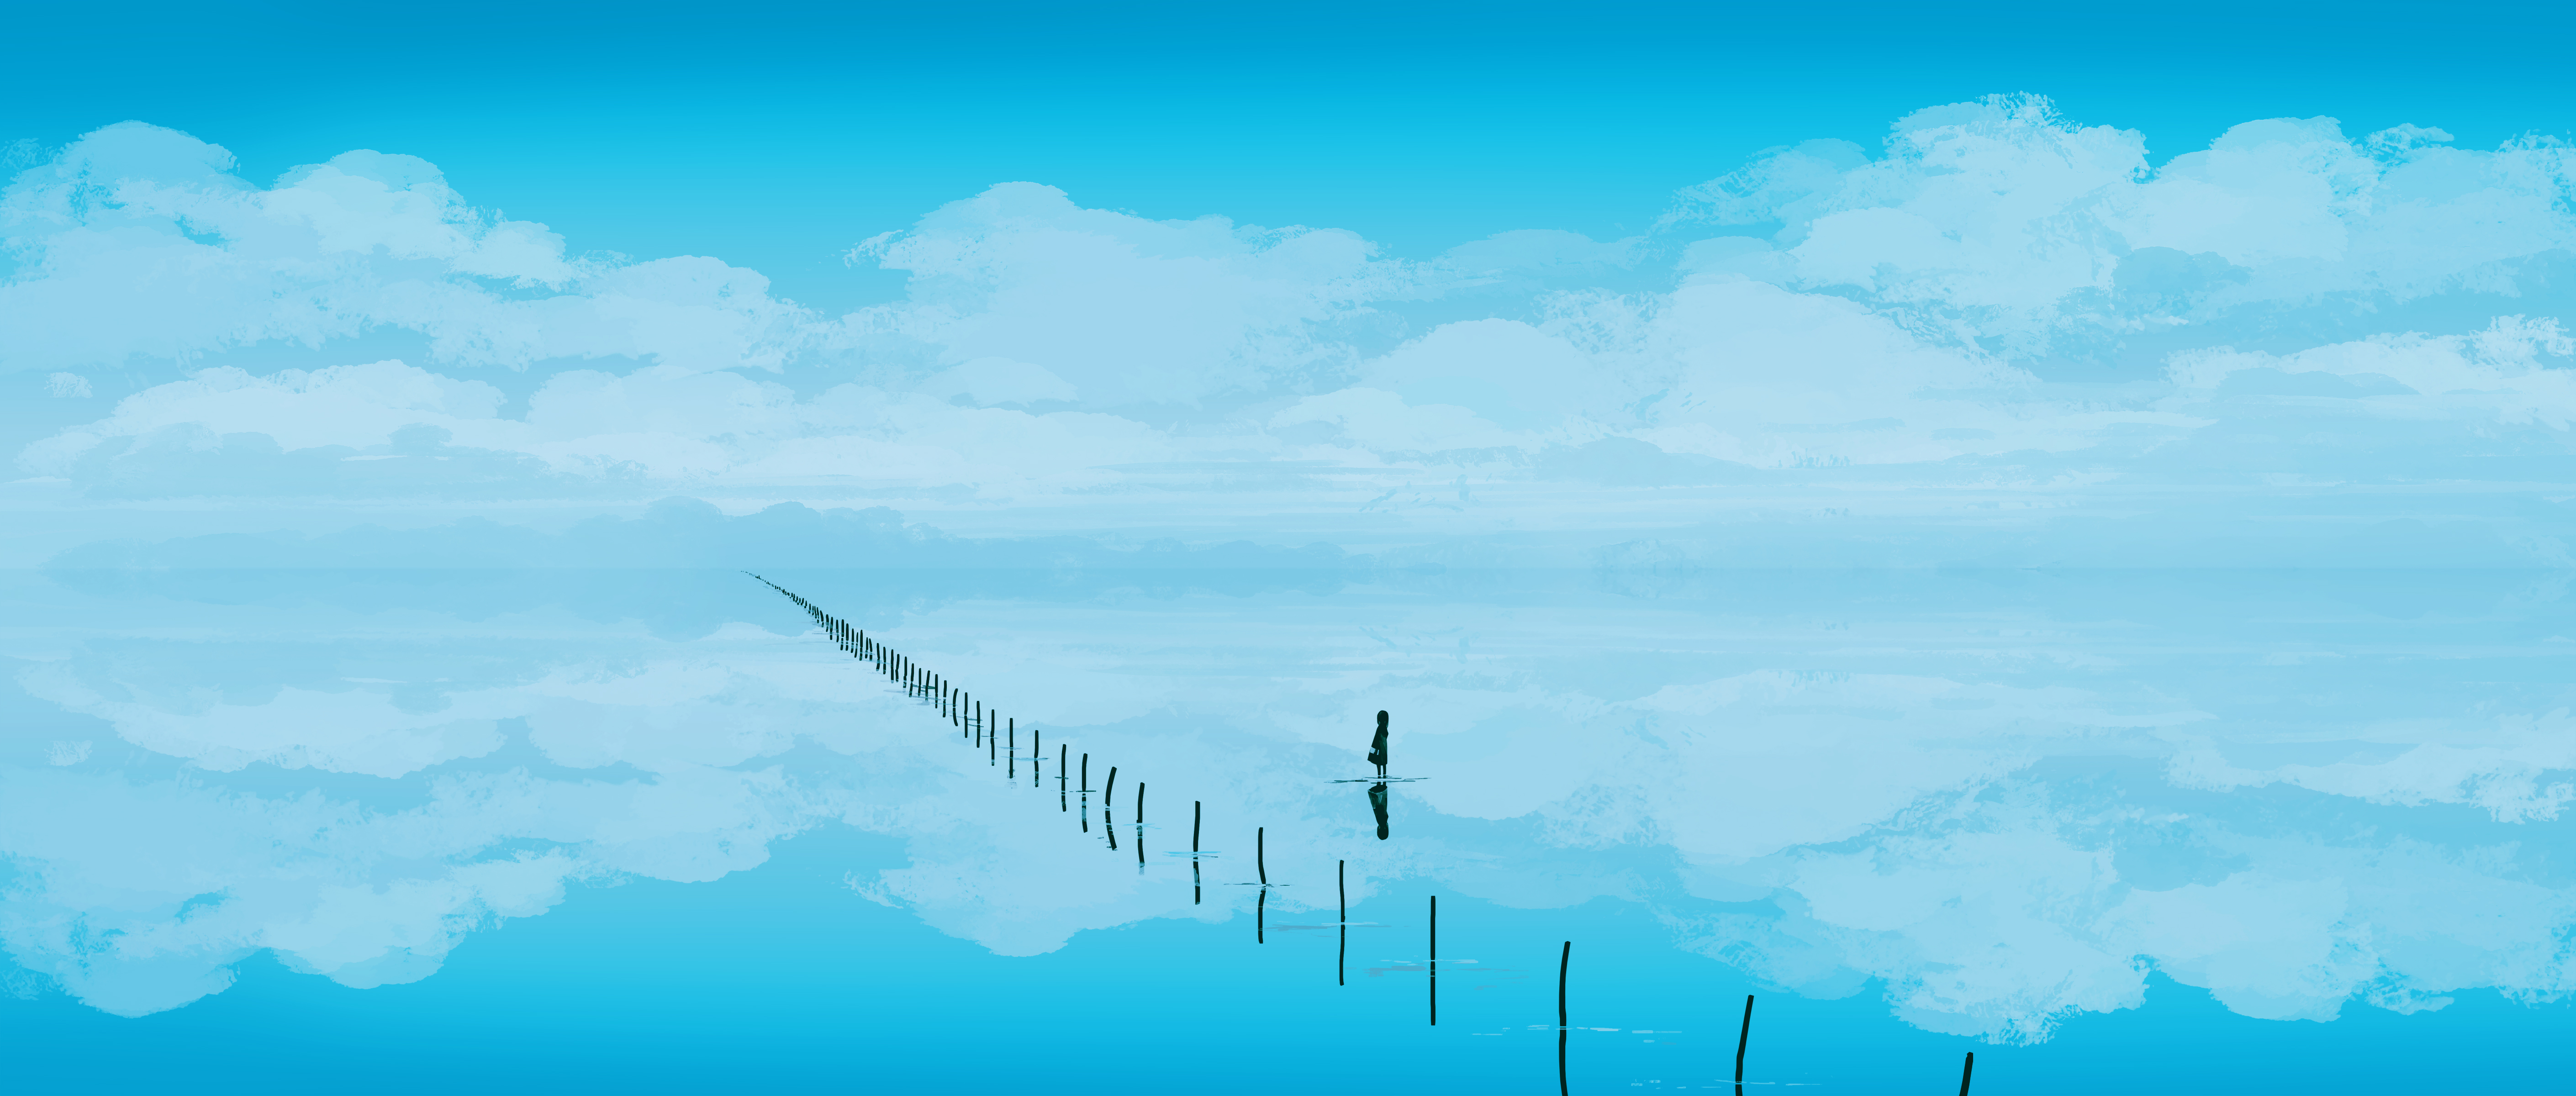 Gracile Digital Art Artwork Illustration Landscape Water Clouds Sky Reflection Nature 5640x2400